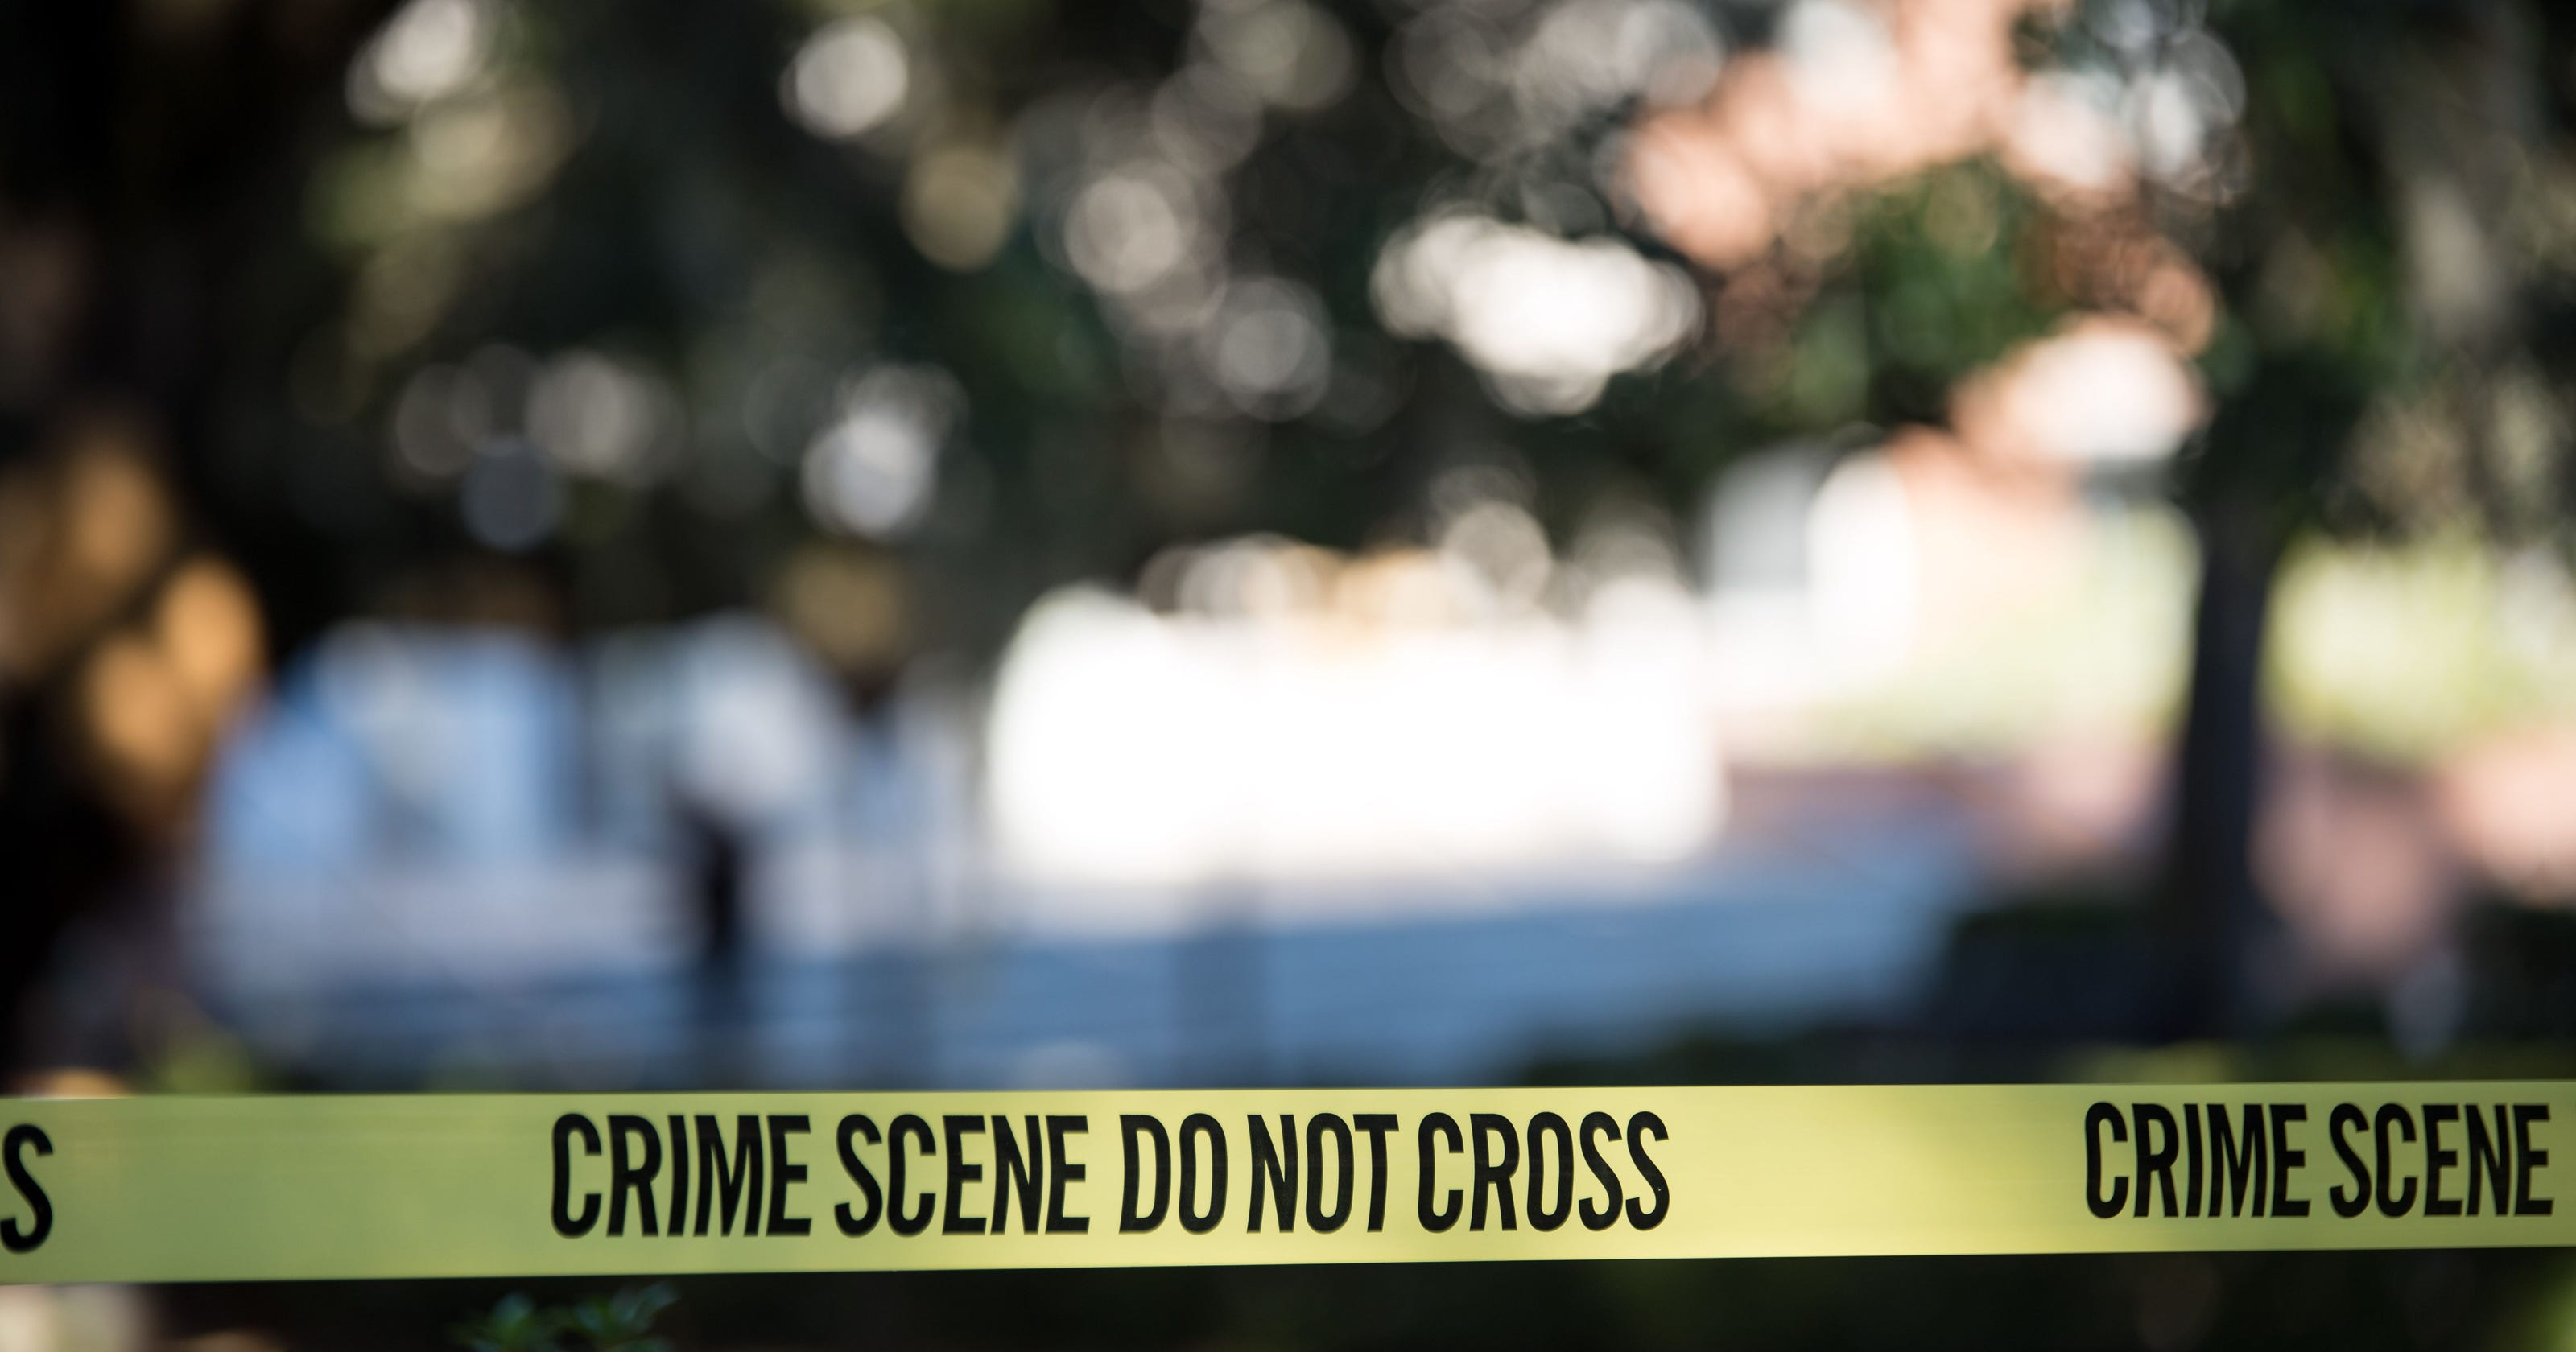 Homewood hotel shooting victim identified as Adamsville man